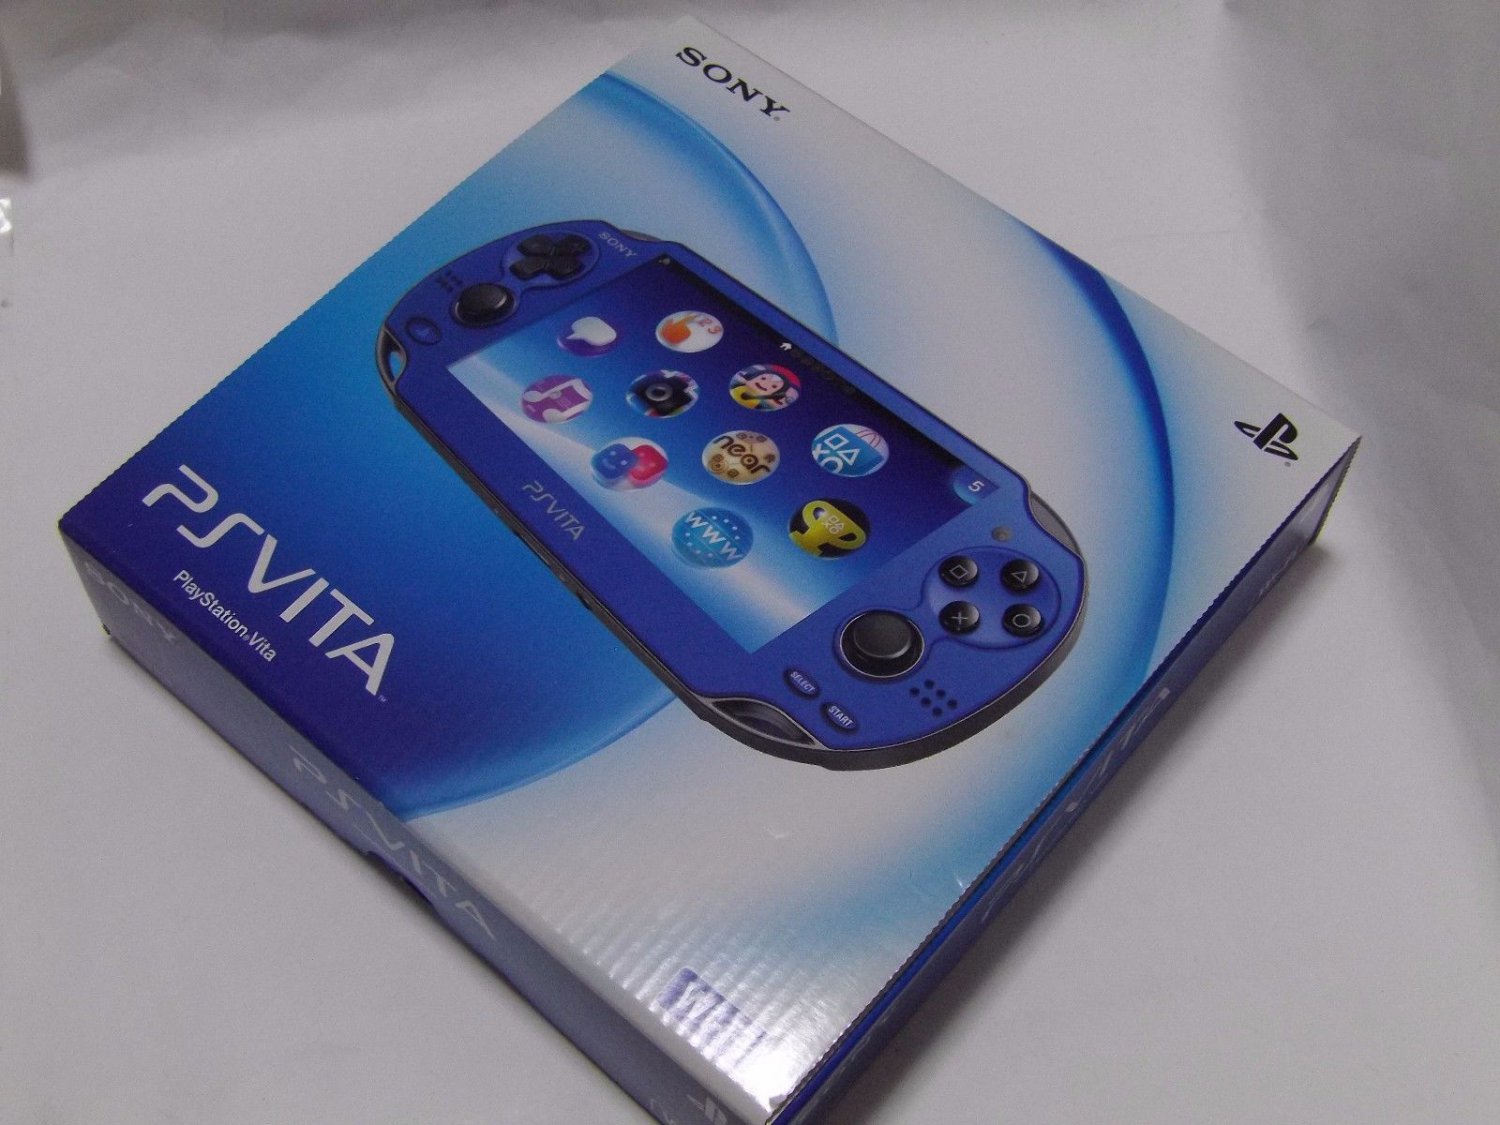 SONY PS Vita PCH-1000 ZA04 Blue Wi-fi Model Console